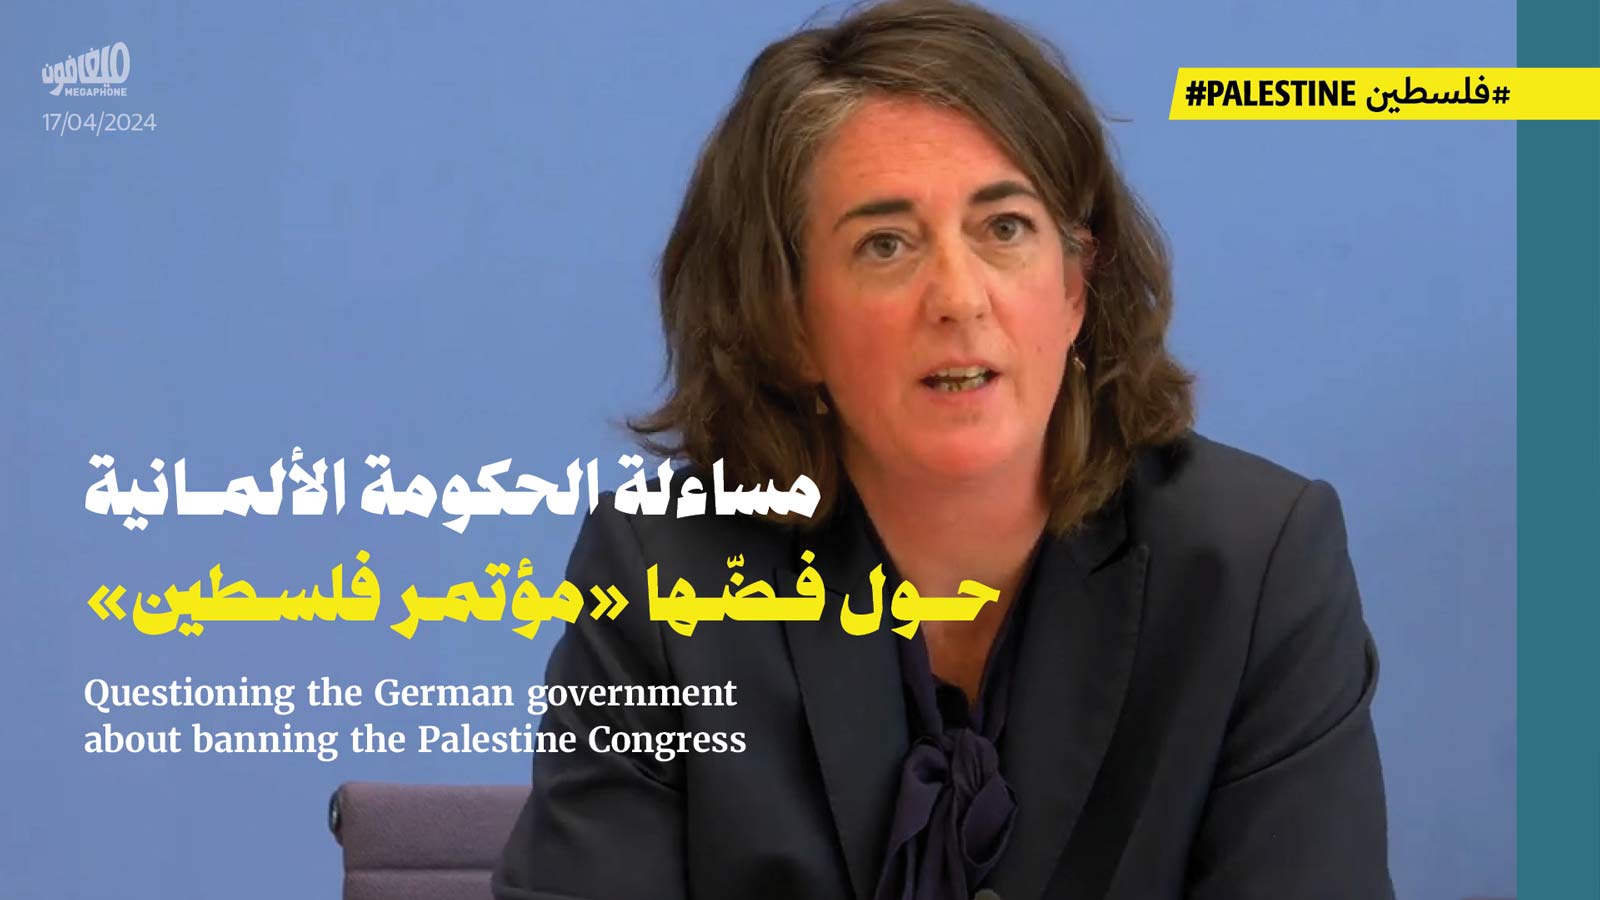 مساءلة الحكومة الألمانية حول فضّها «مؤتمر فلسطين»